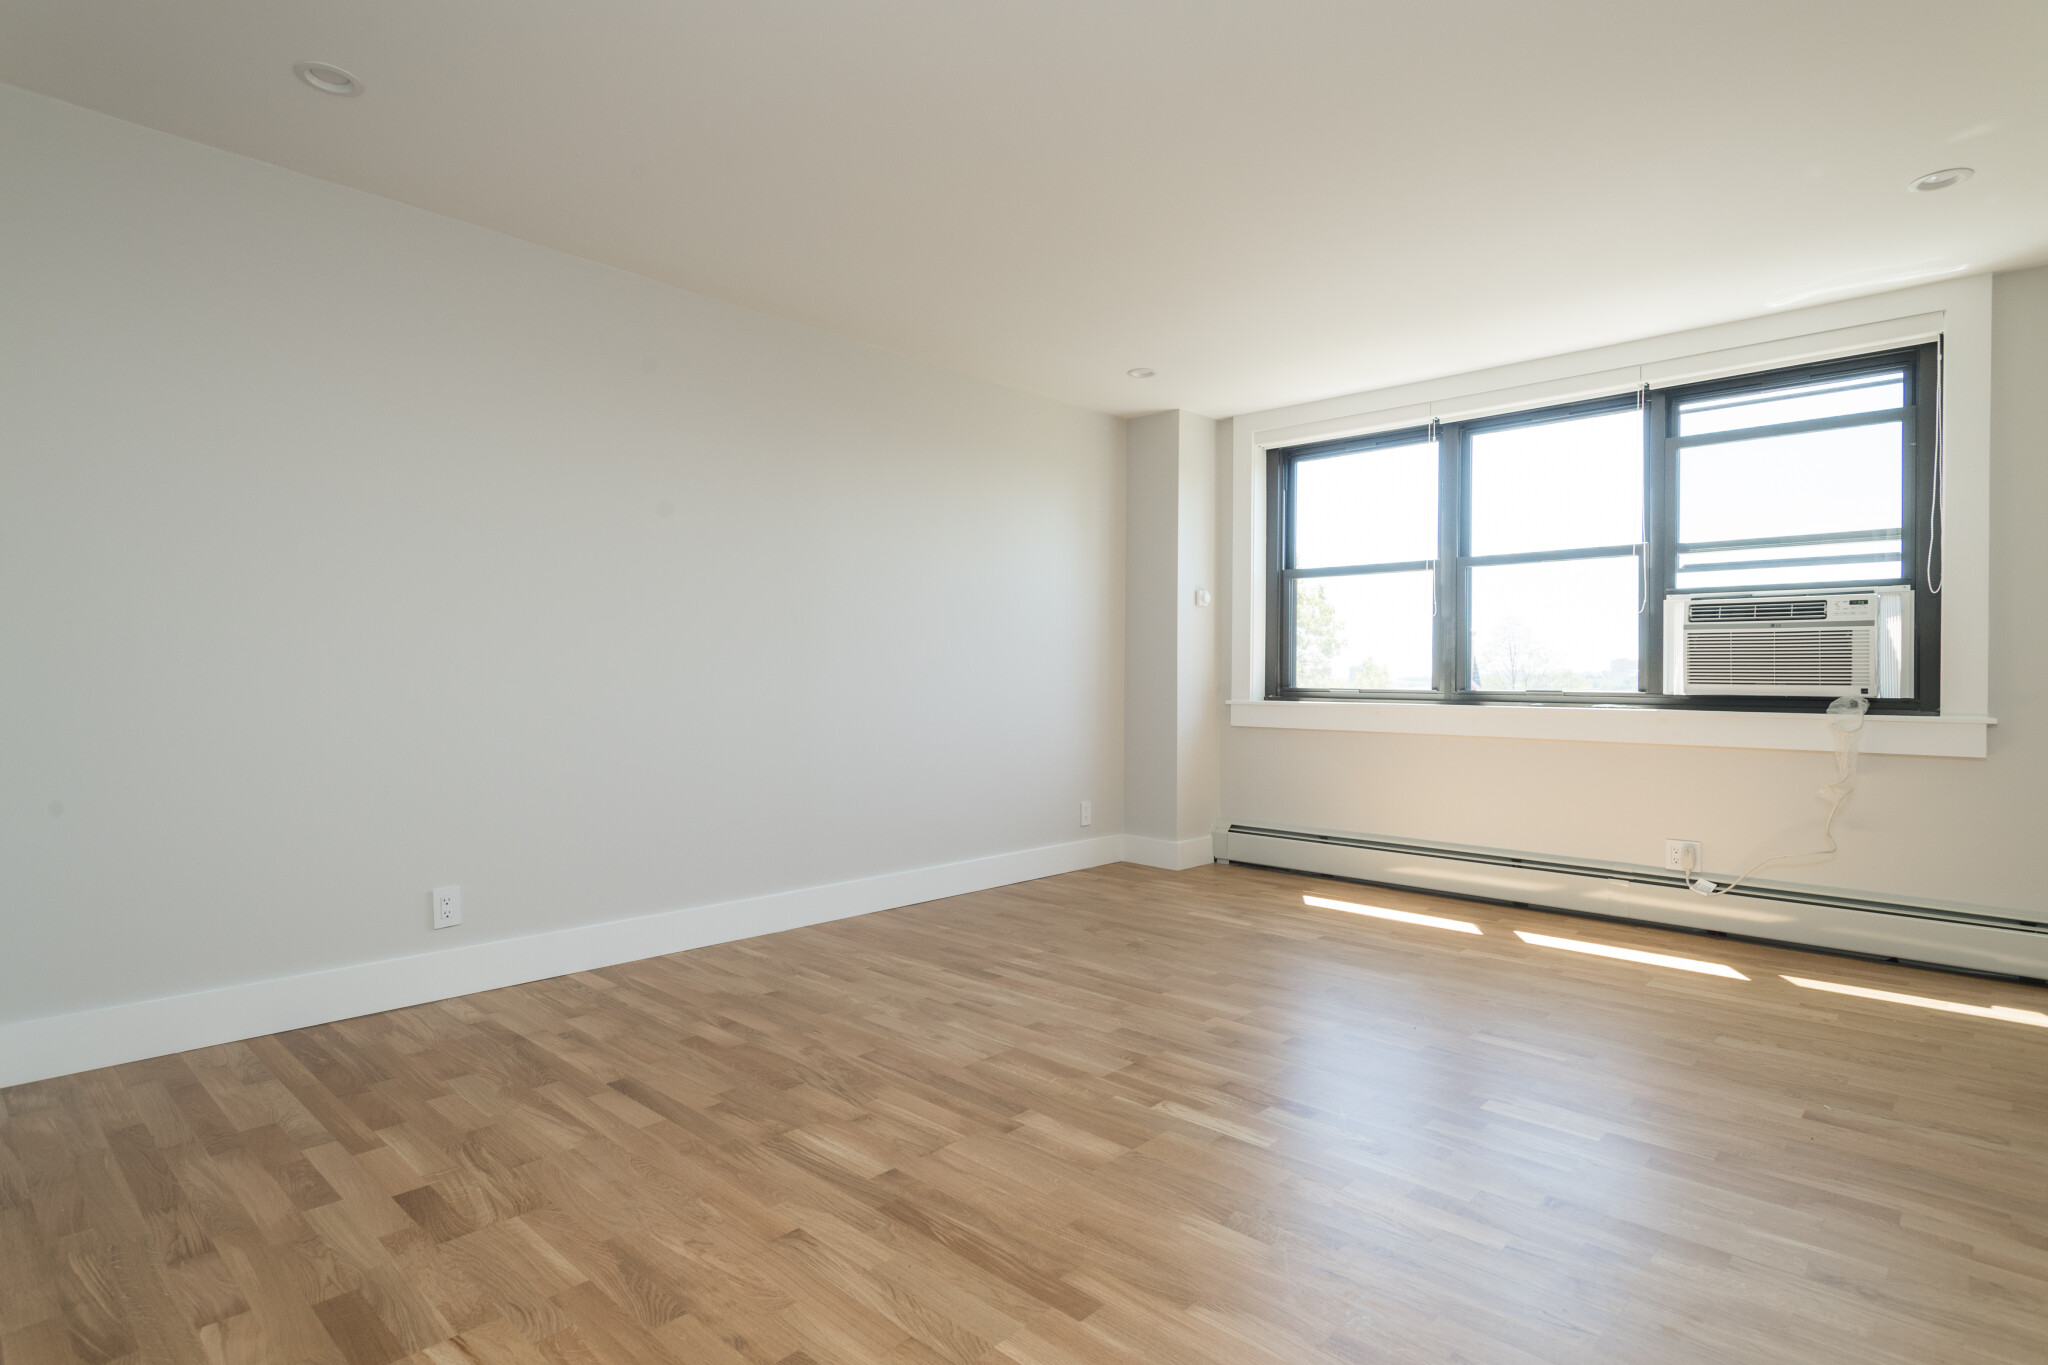 Photos of apartment on Columbia Rd.,Boston MA 02127